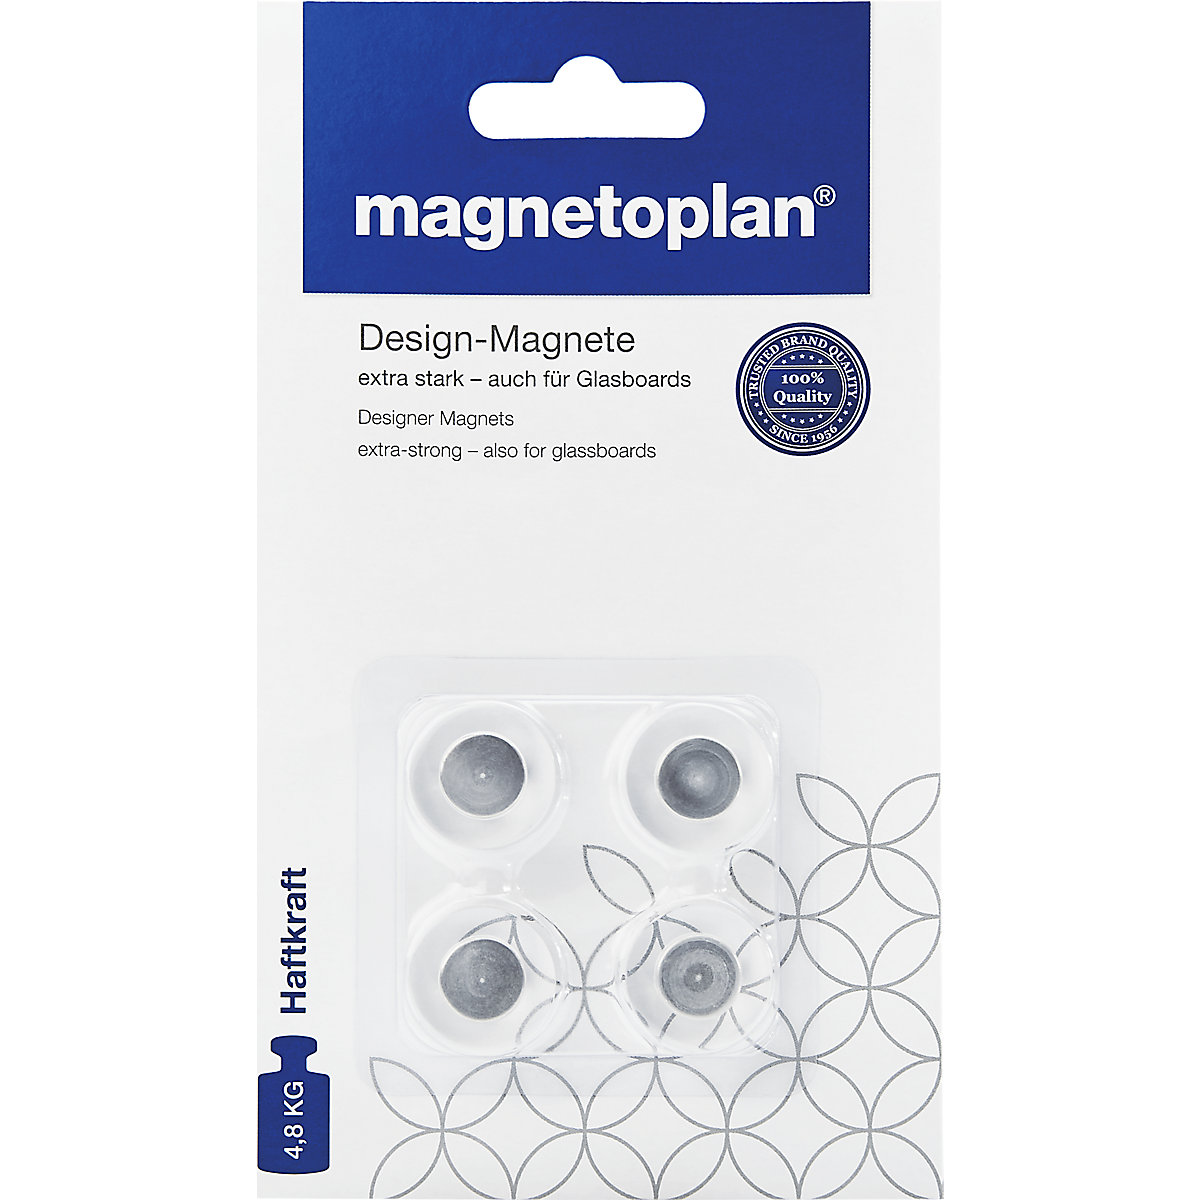 magnetoplan – Designer magnet, for glass boards, pack of 12, Ø 20 mm, transparent